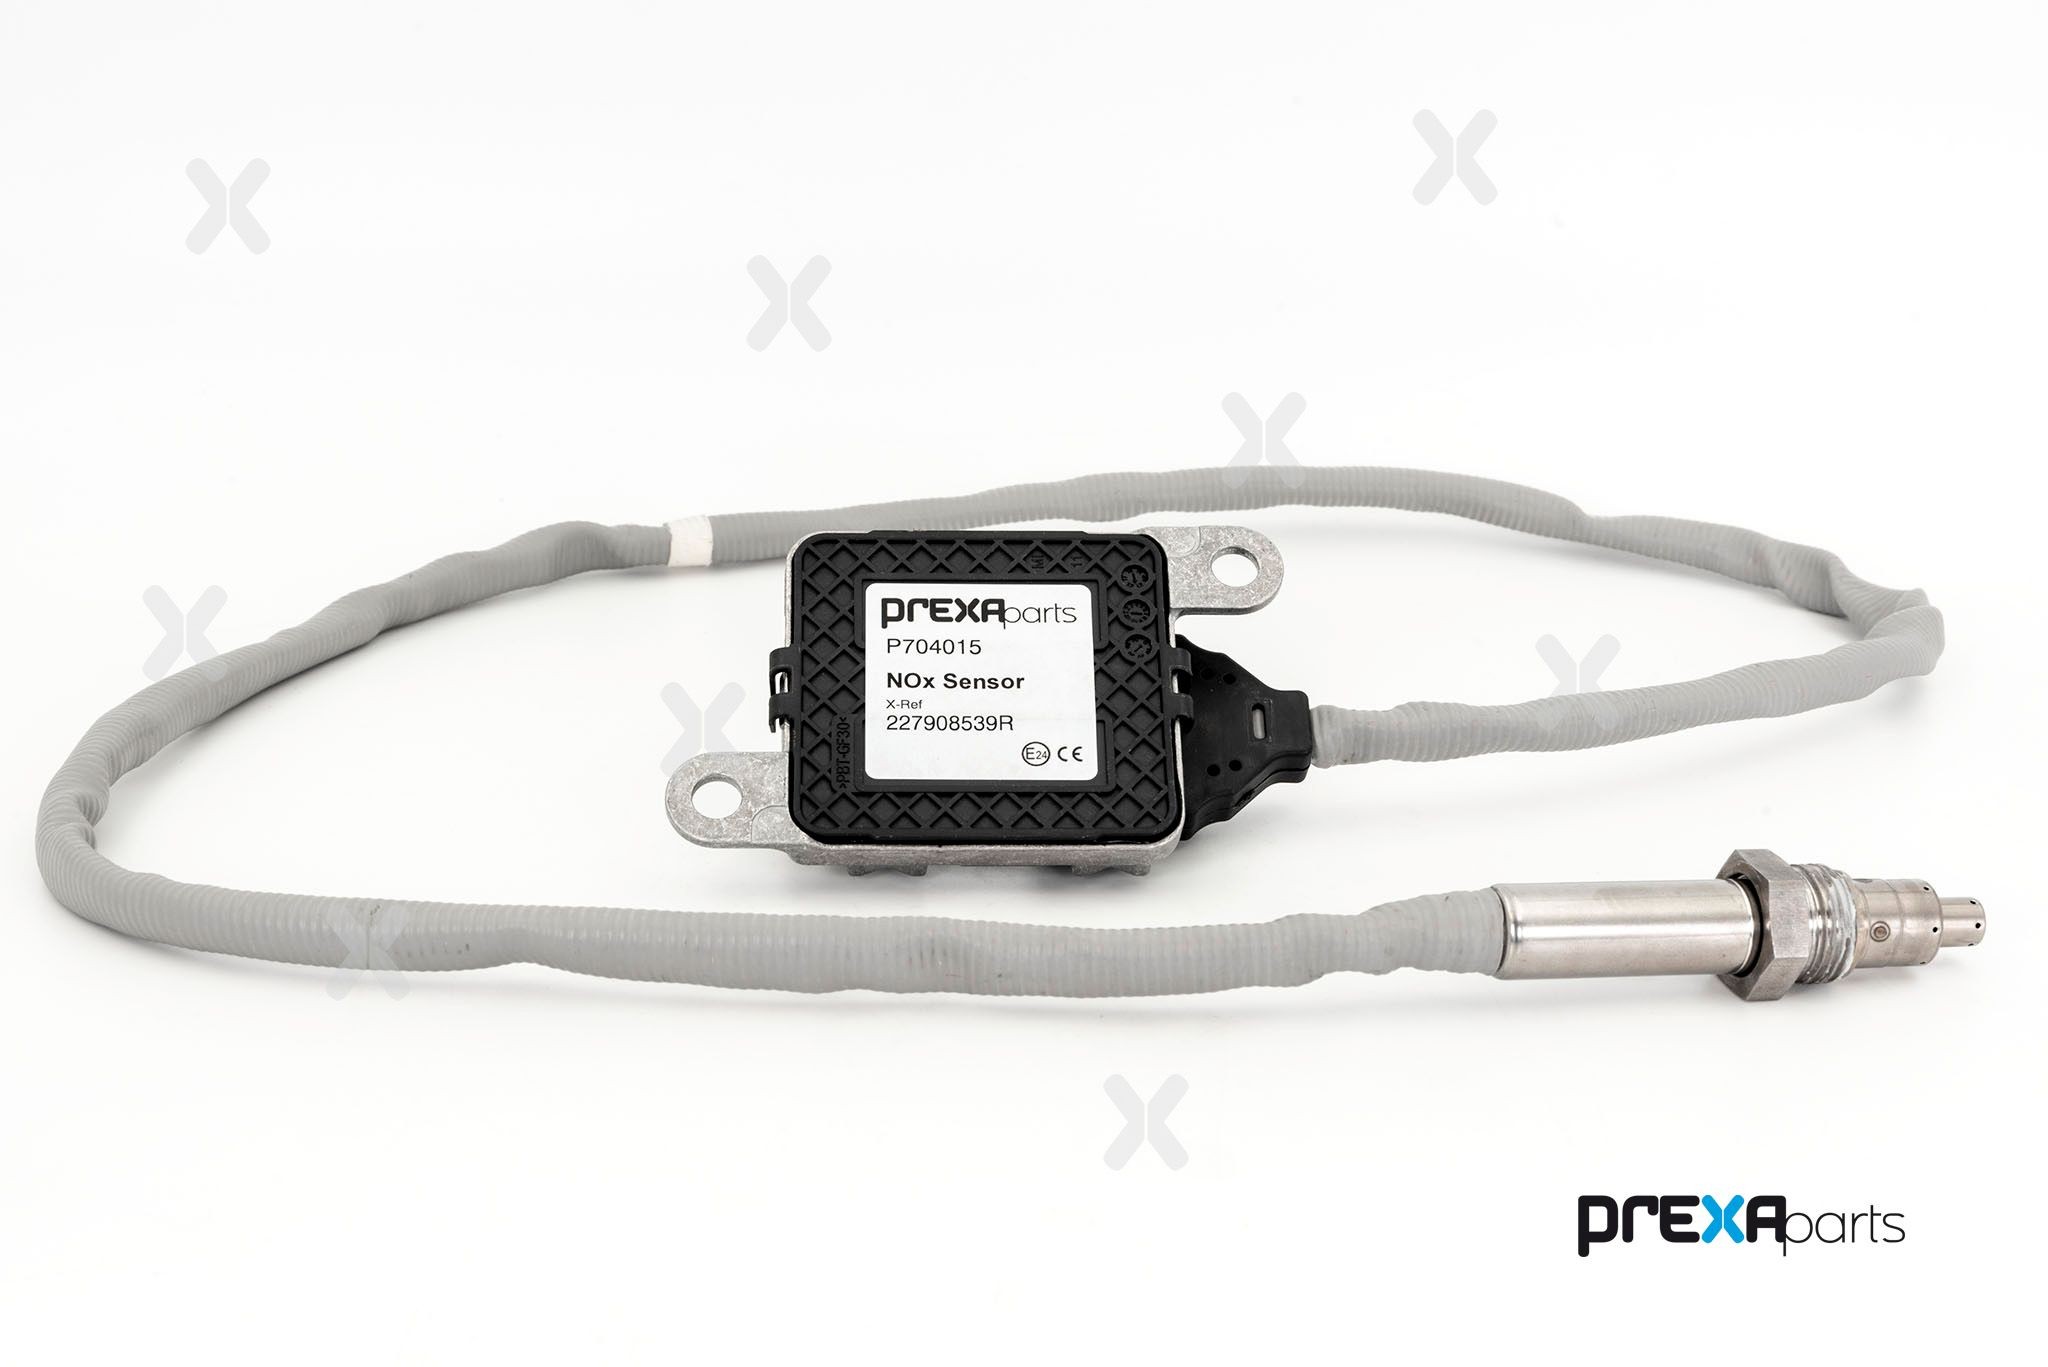 PREXAparts P704015 NOx Sensor, NOx Catalyst 227908539R